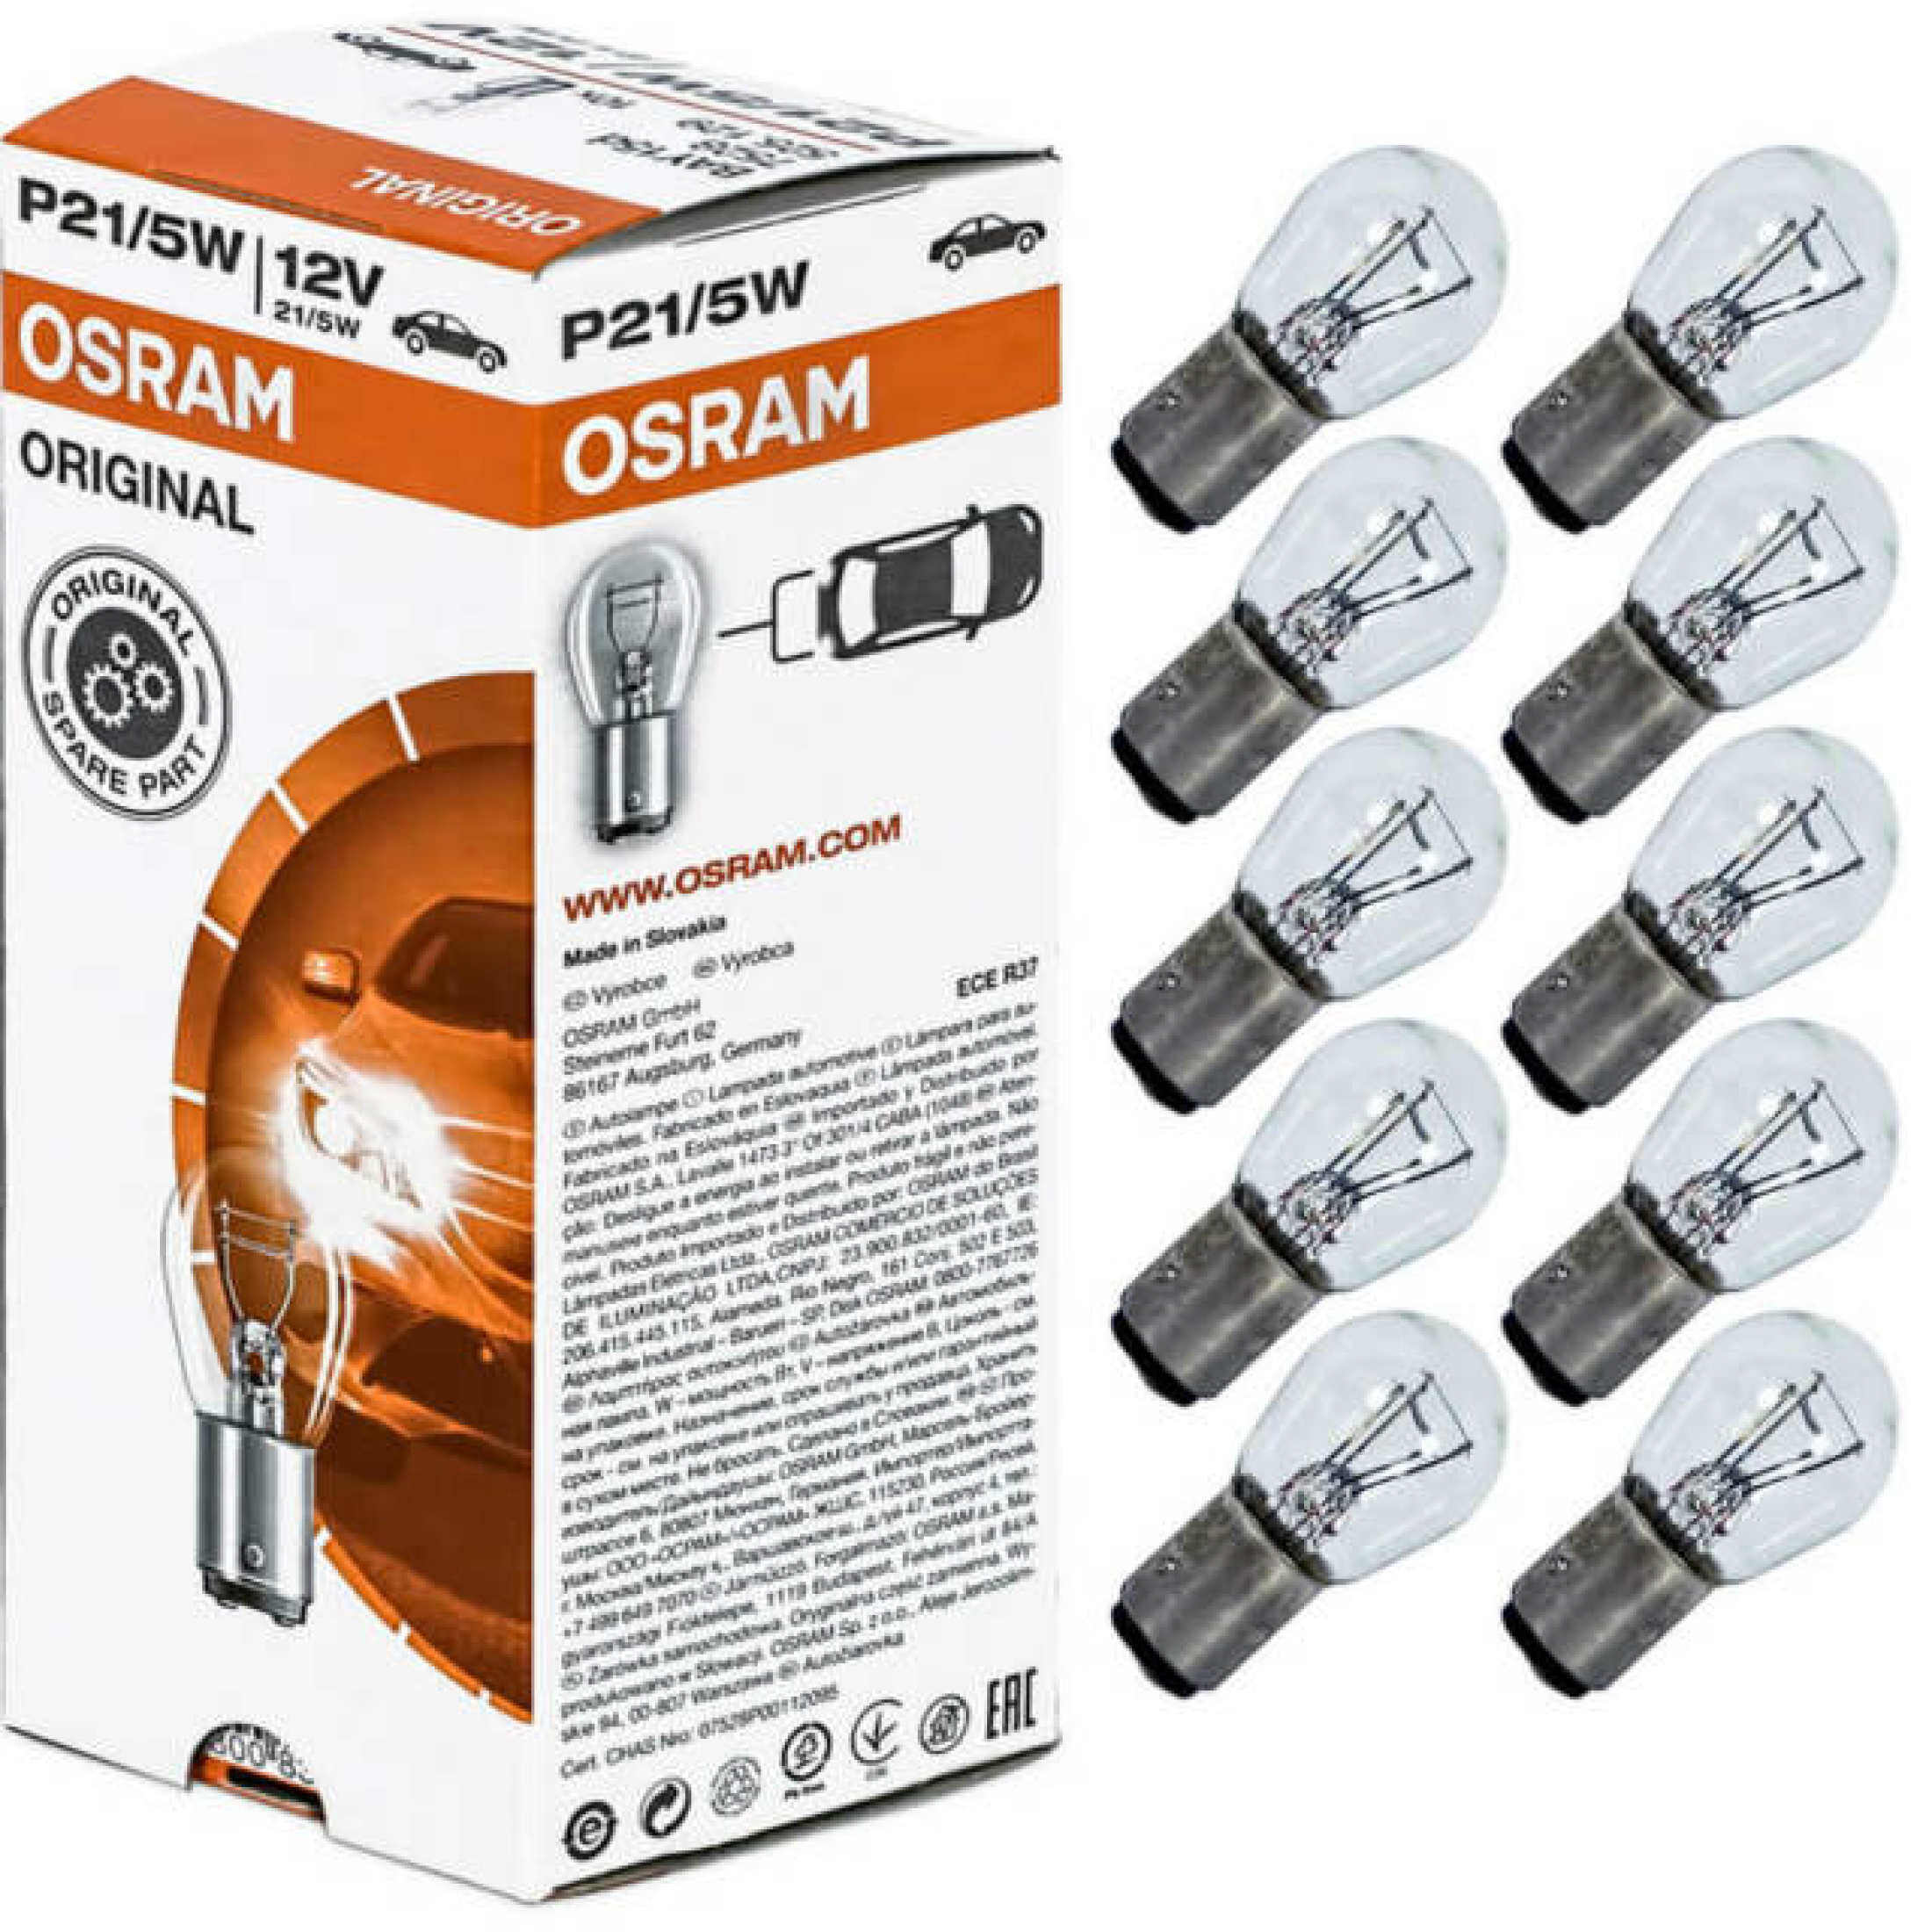 Osram Bulbs 7528 P21 12/5W 1016 Tail Lamp Bulbs - 10pcs